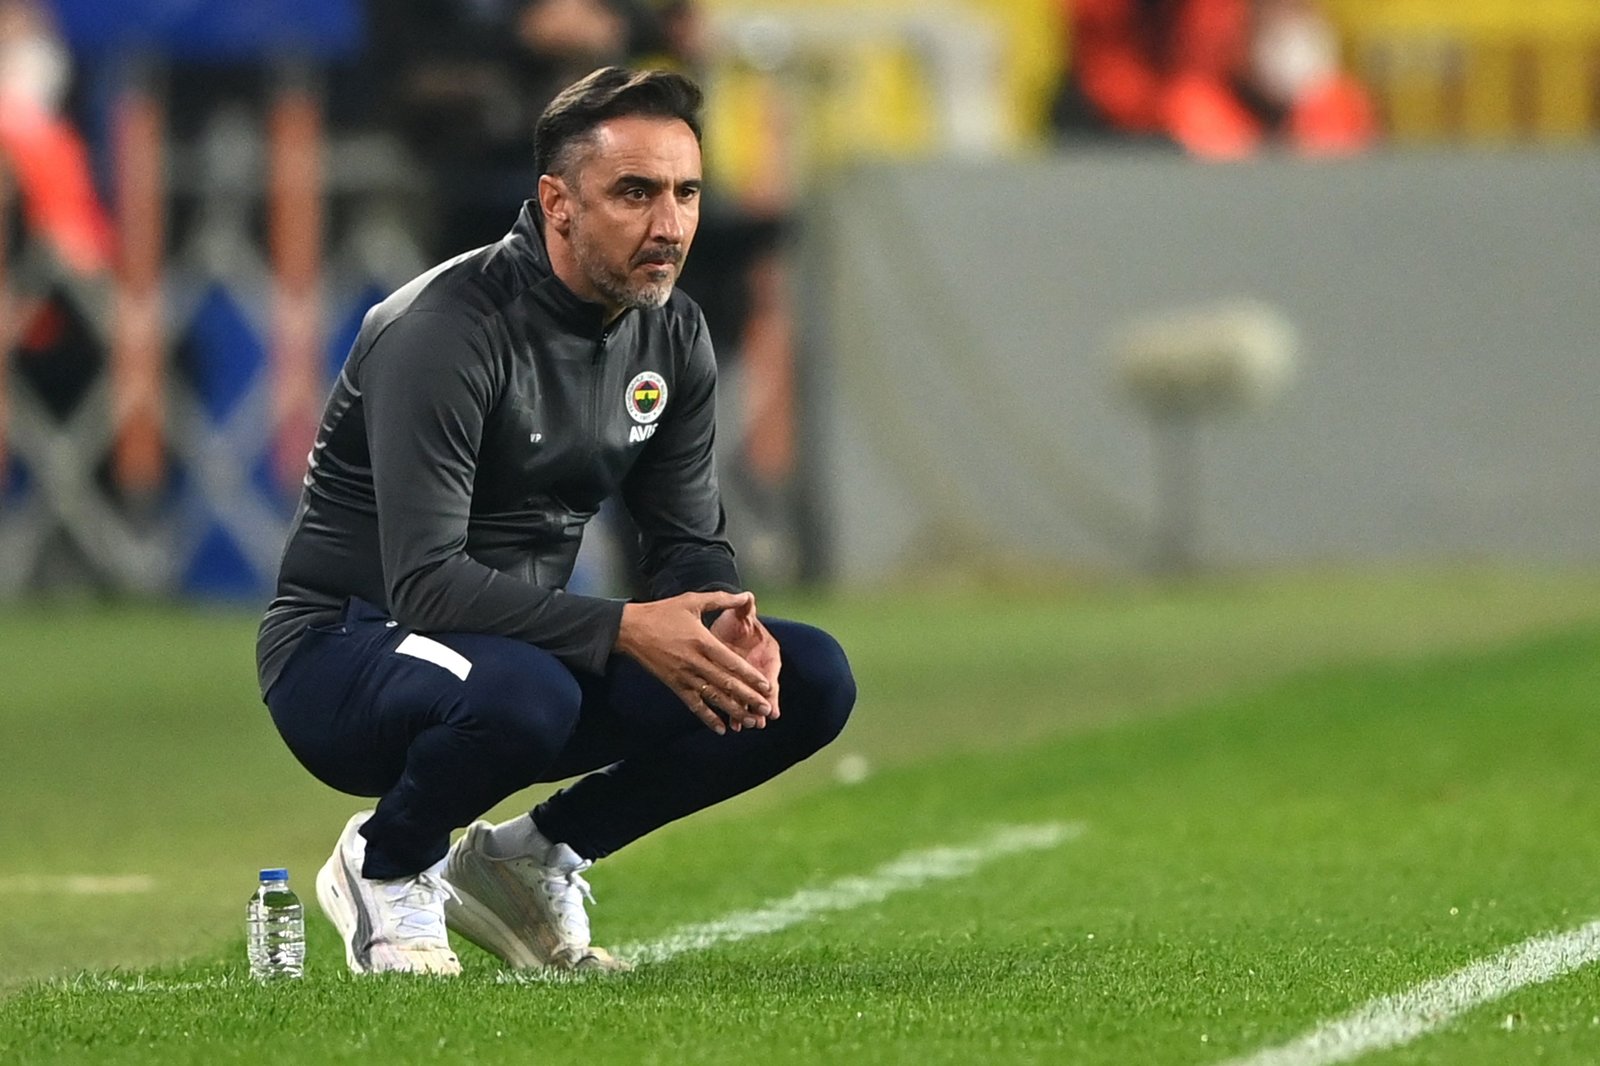 El Fenerbahçe despide a su entrenador, el portugués Vitor Pereira